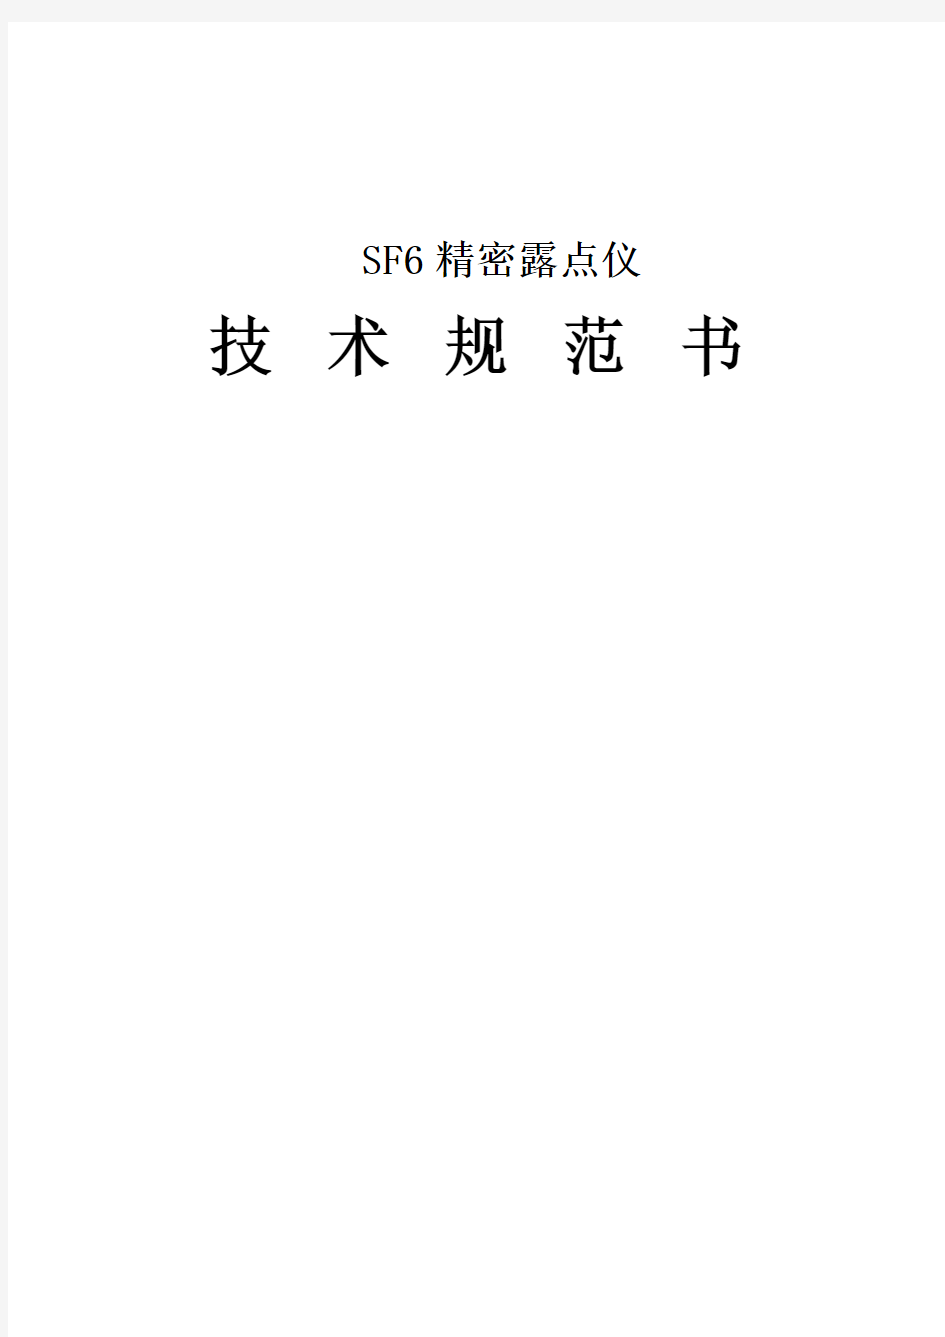 SF6精密露点仪技术规范书